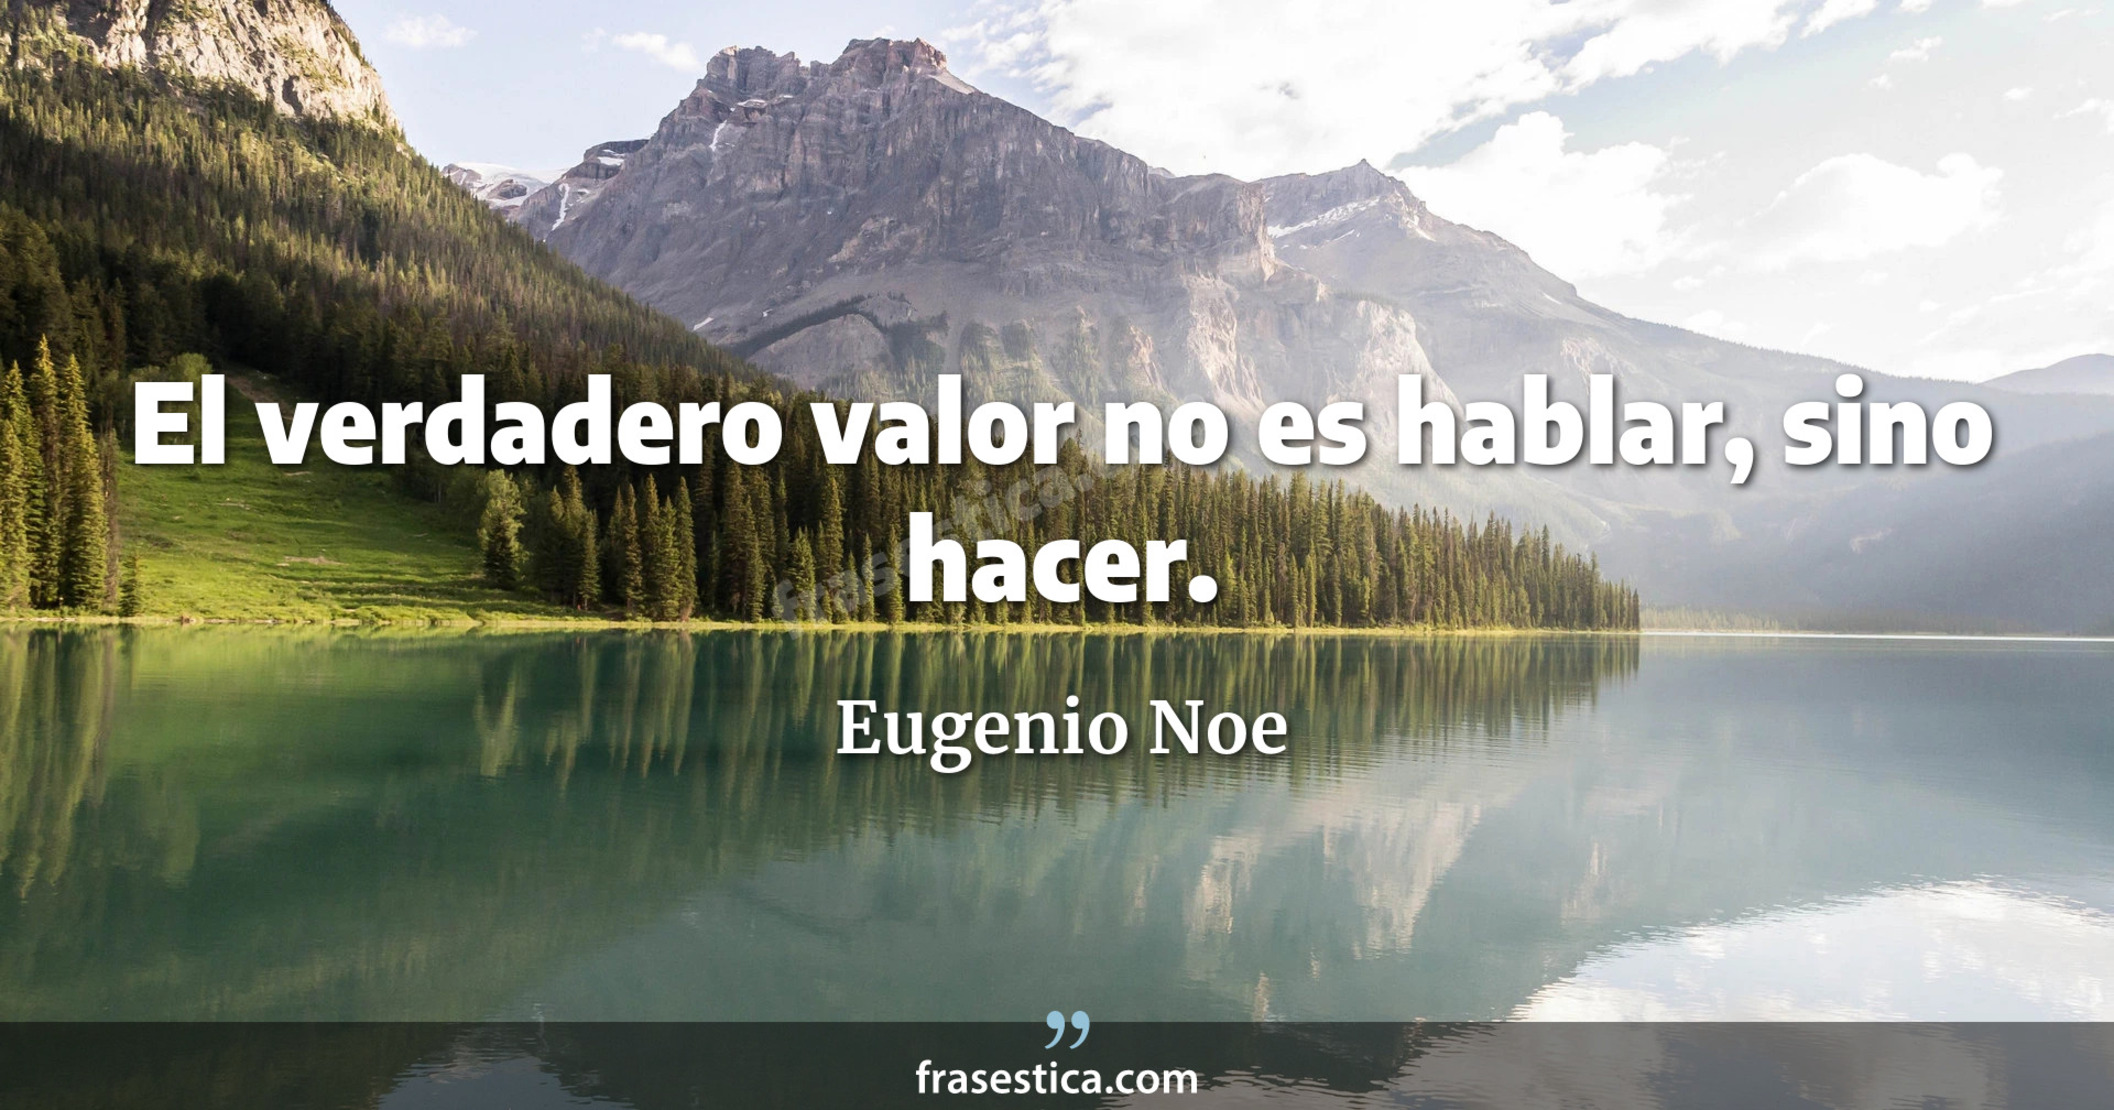 El verdadero valor no es hablar, sino hacer. - Eugenio Noe